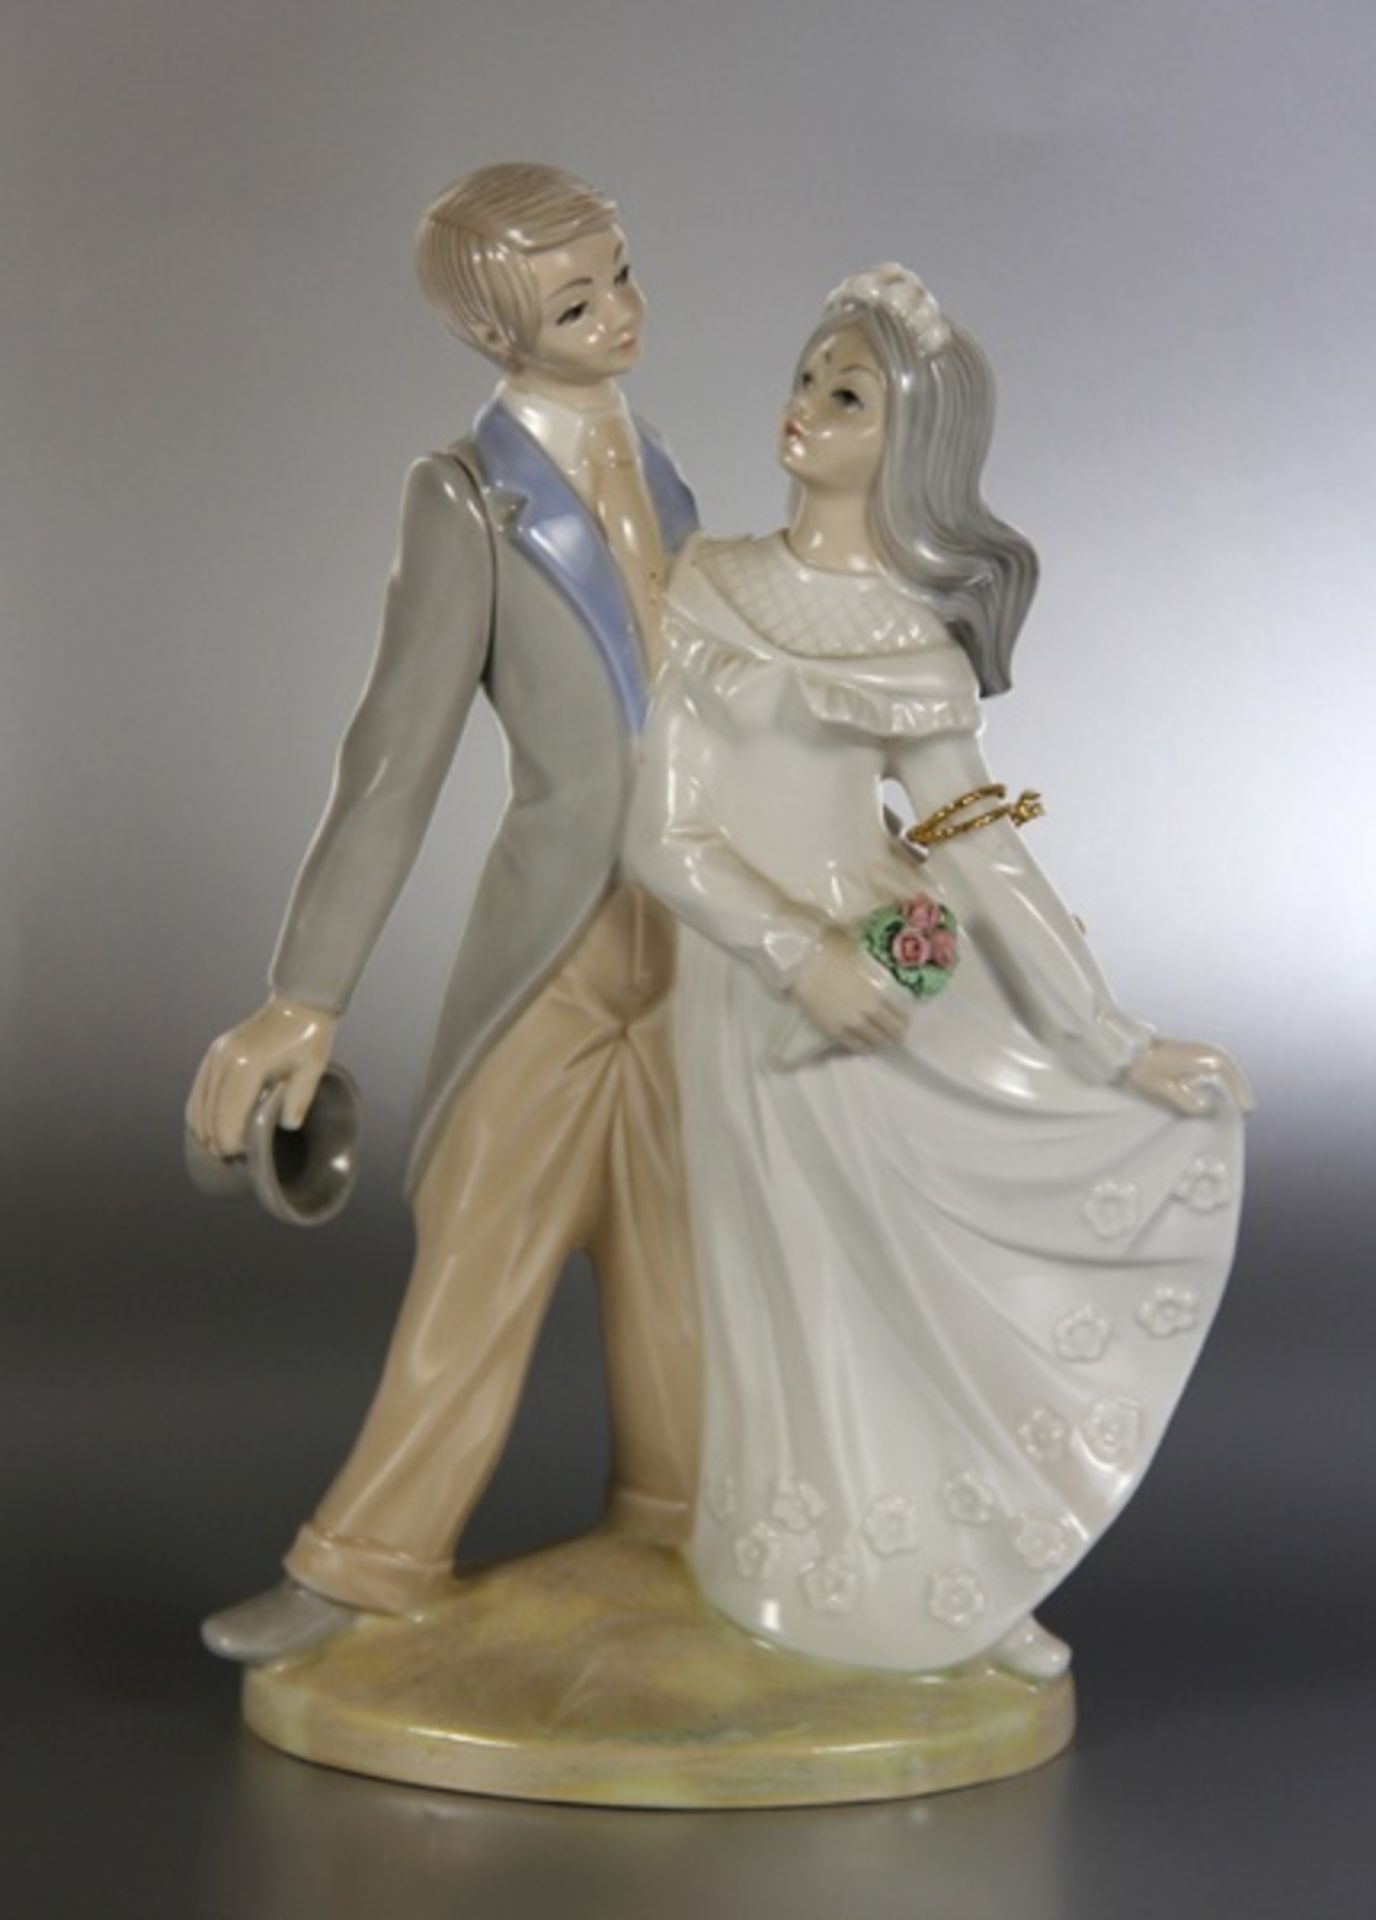 Porzellanfigur Brautpaar20. Jhd., Tengra Spanien, farbig staffierte Porzellanfigur eines